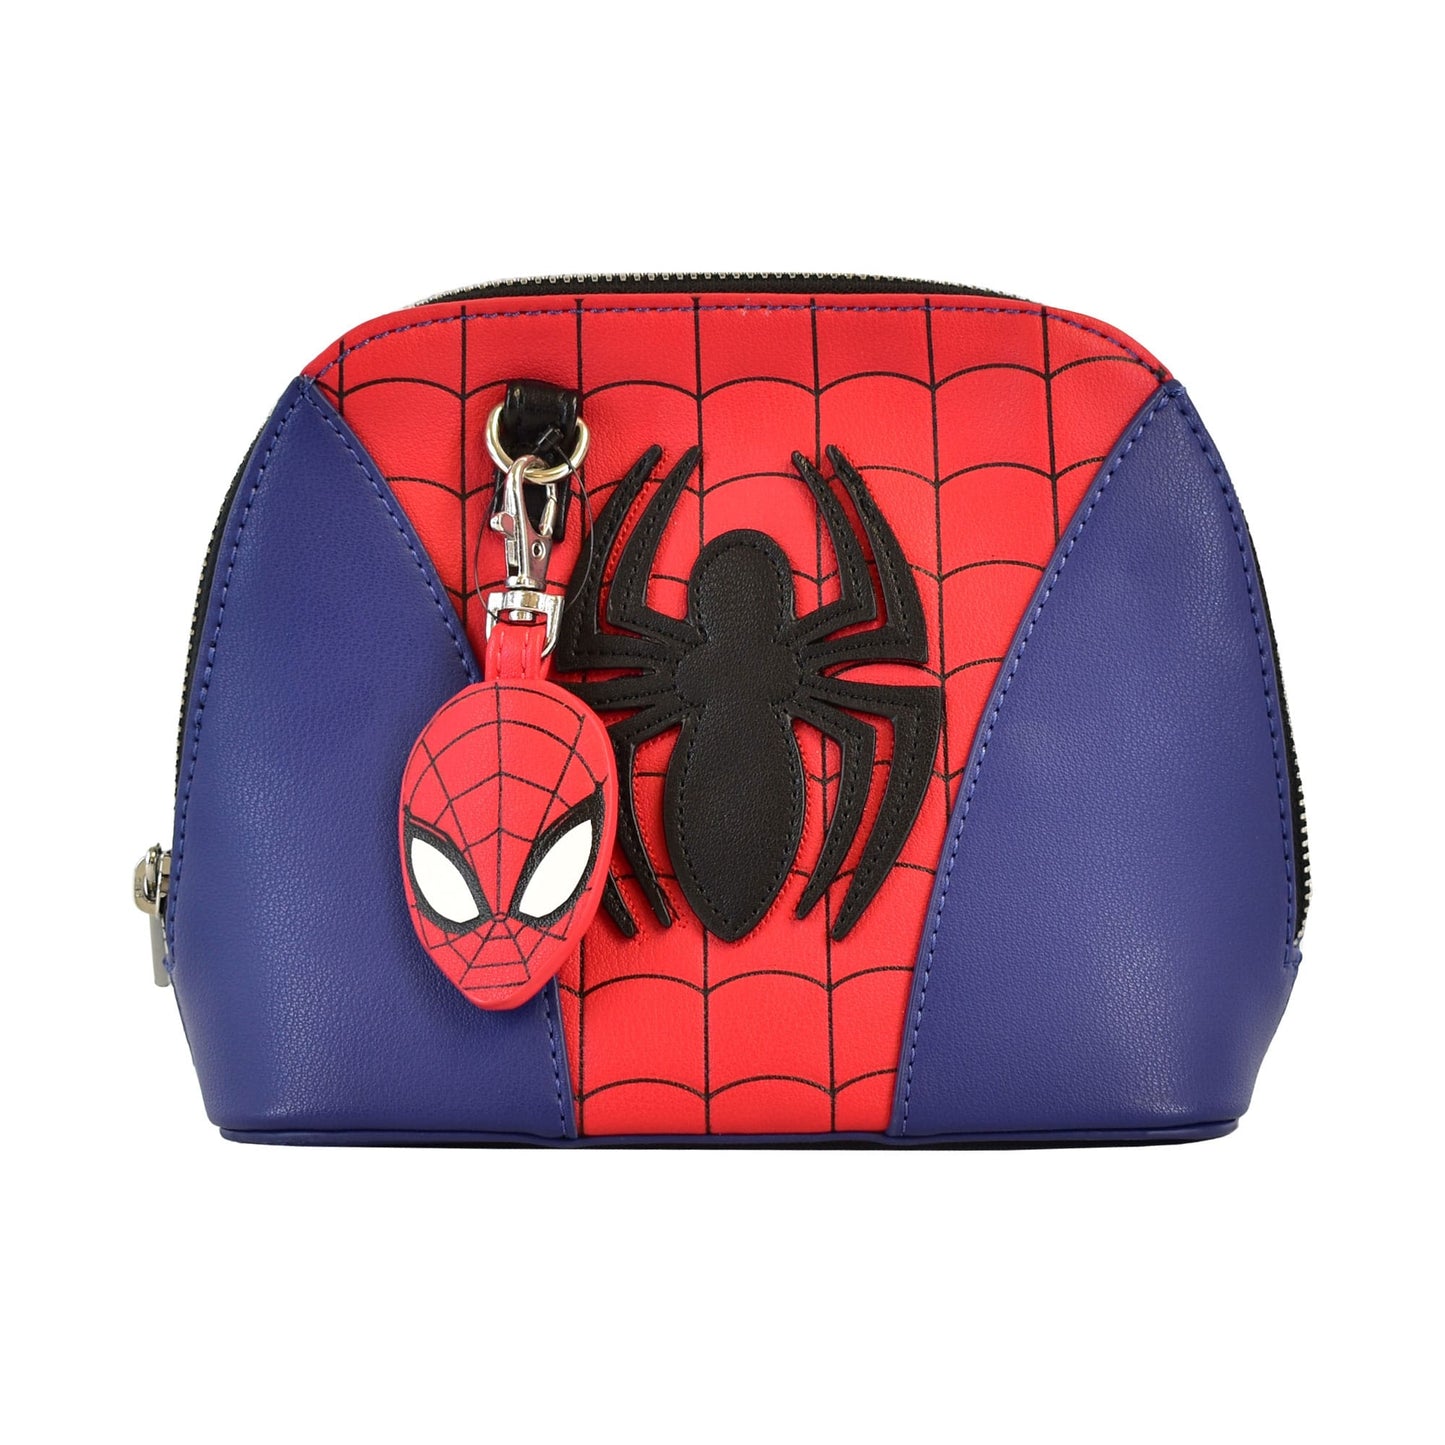 Sac bandoulière Spider-man - Japan Exclusive